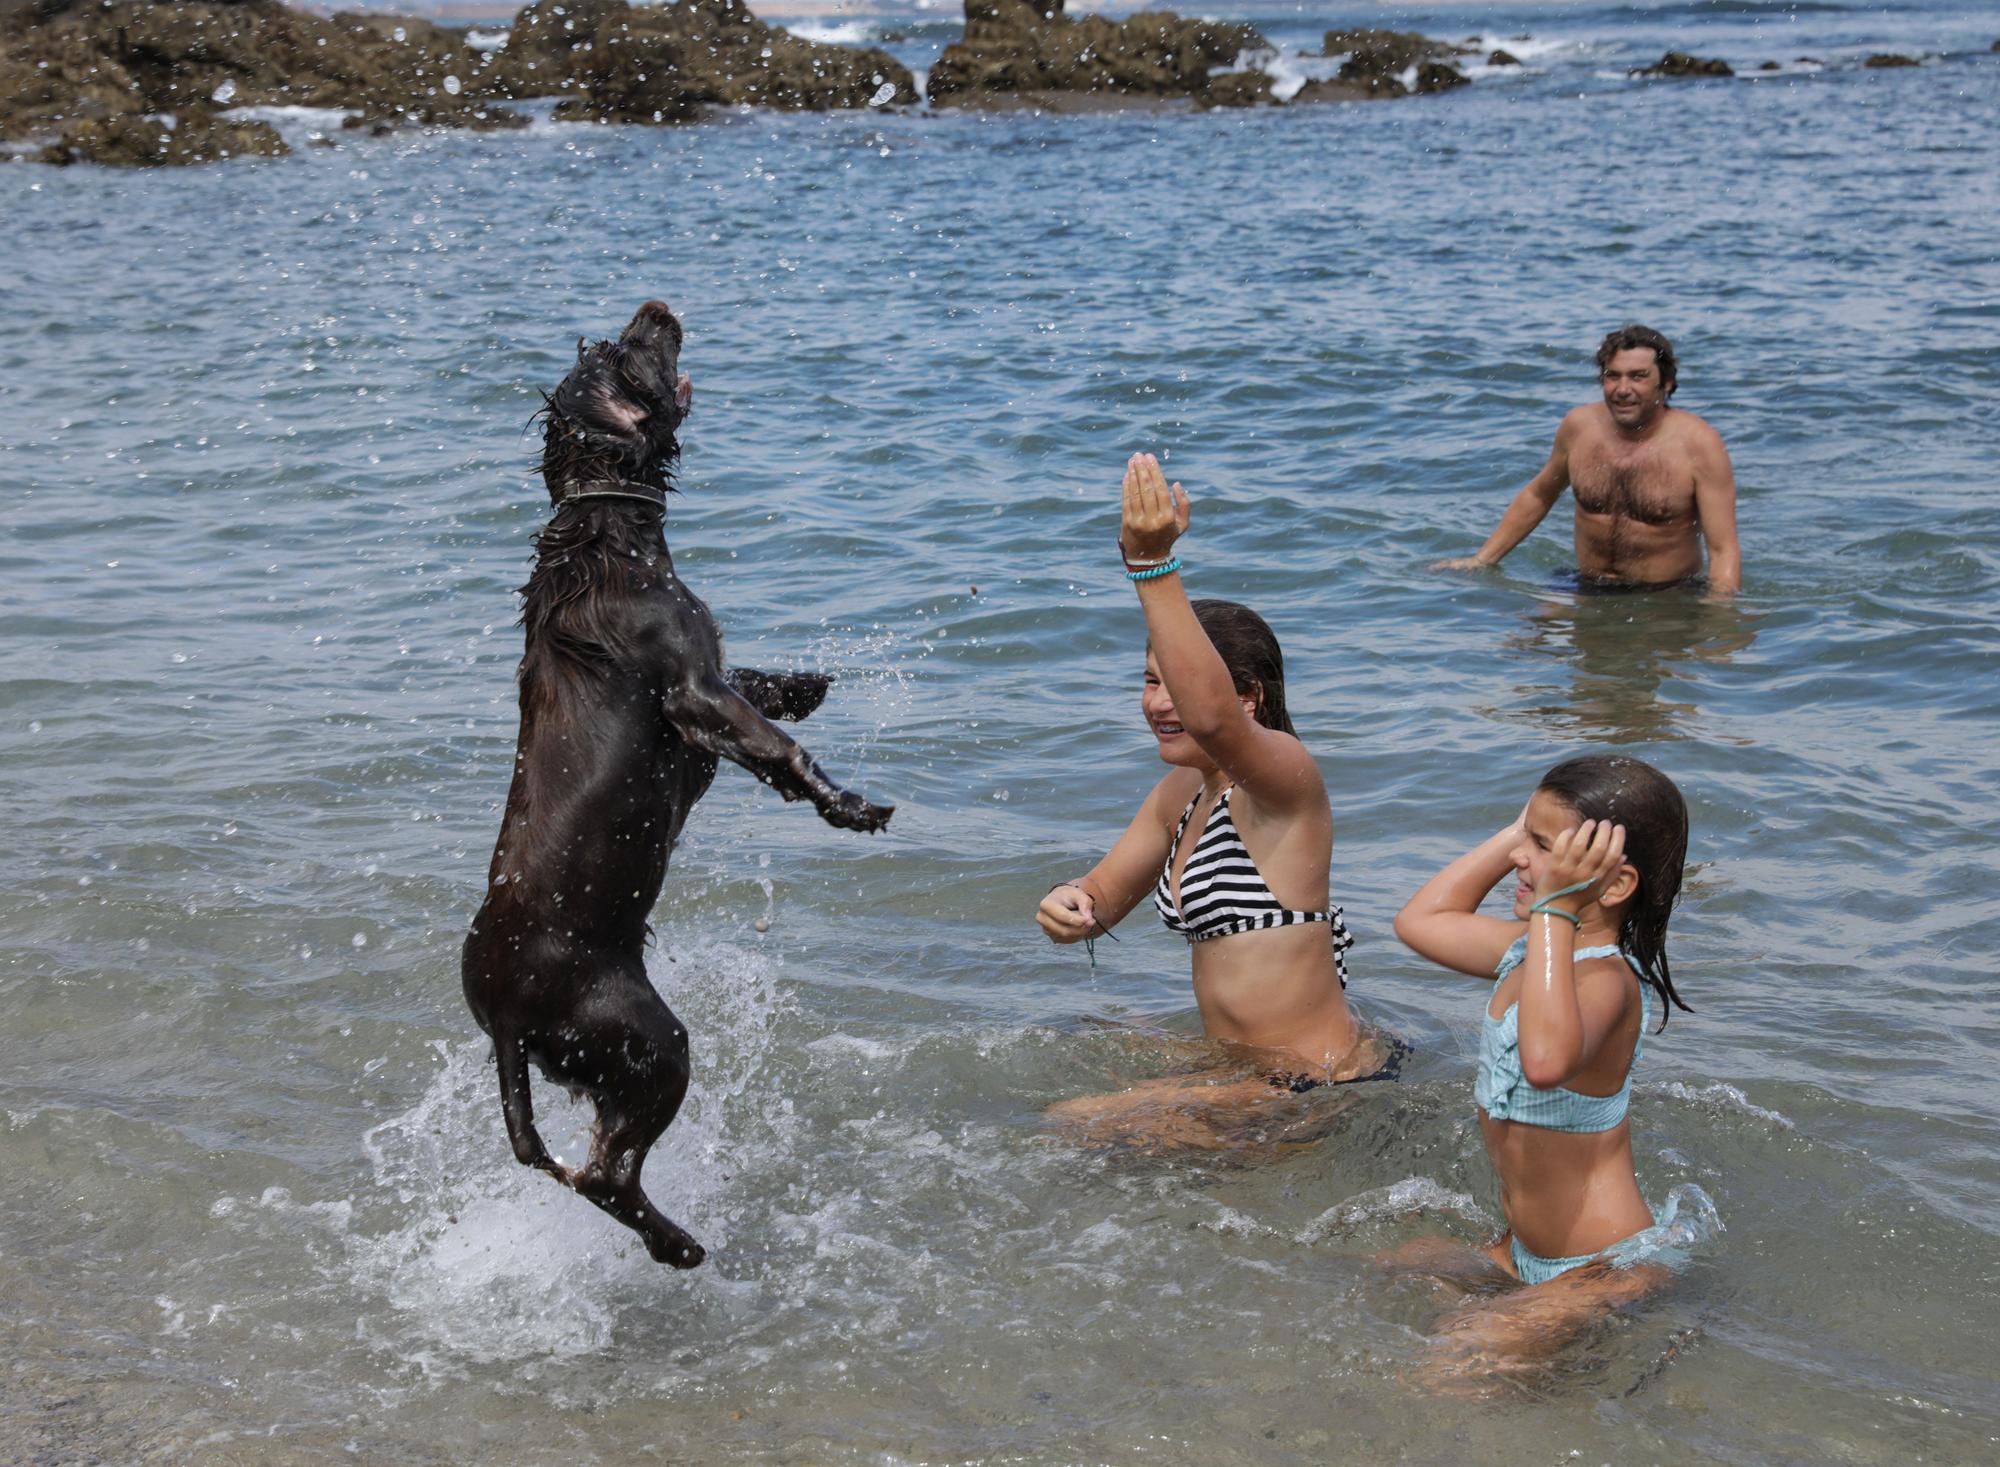 En imágenes: El perro y el bañista disfrutan en armonía